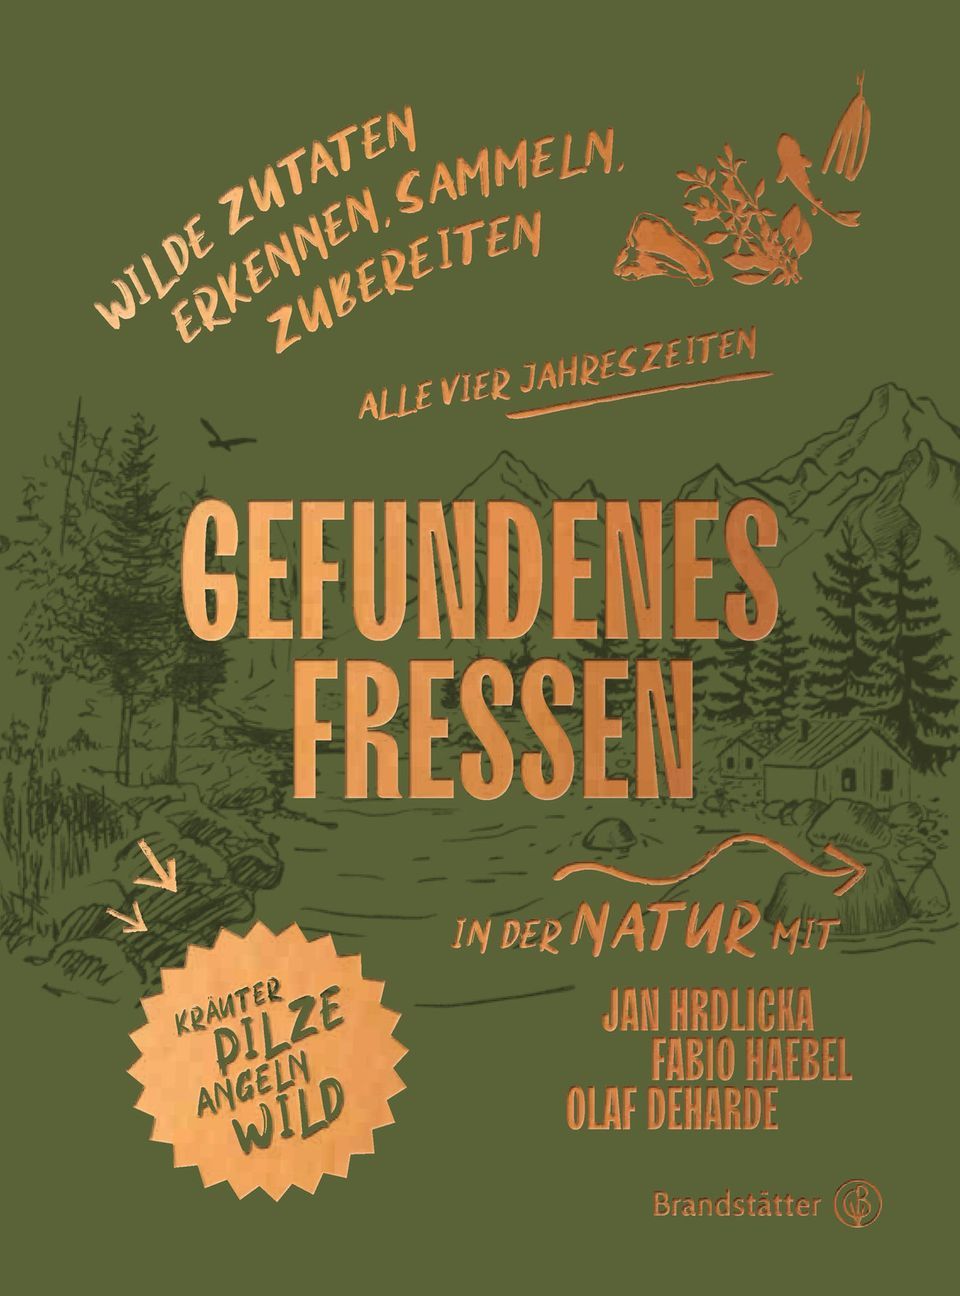 Mehr Rezepte gibt's im Kochbuch "Gefundenes Fressen" von Jan Hrdlicka, Olaf Deharde und Fabio Haebel. Erschienen bei Brandstätter. 240 Seiten. 35 Euro.